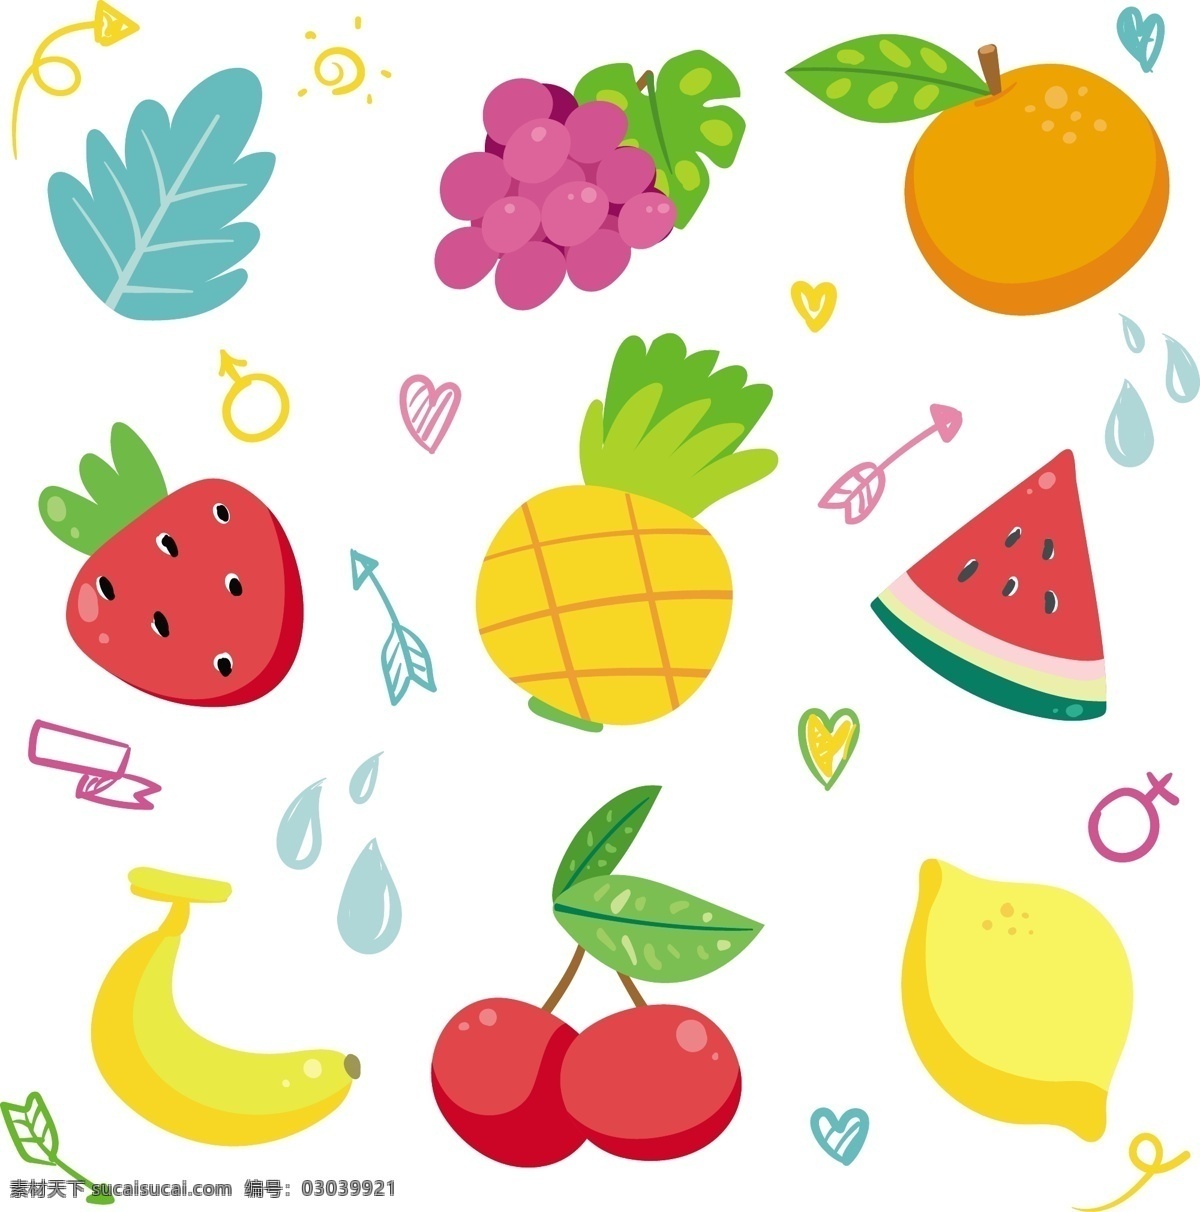 手绘水果 手绘 卡通 水果 菠萝 苹果 底纹边框 背景底纹